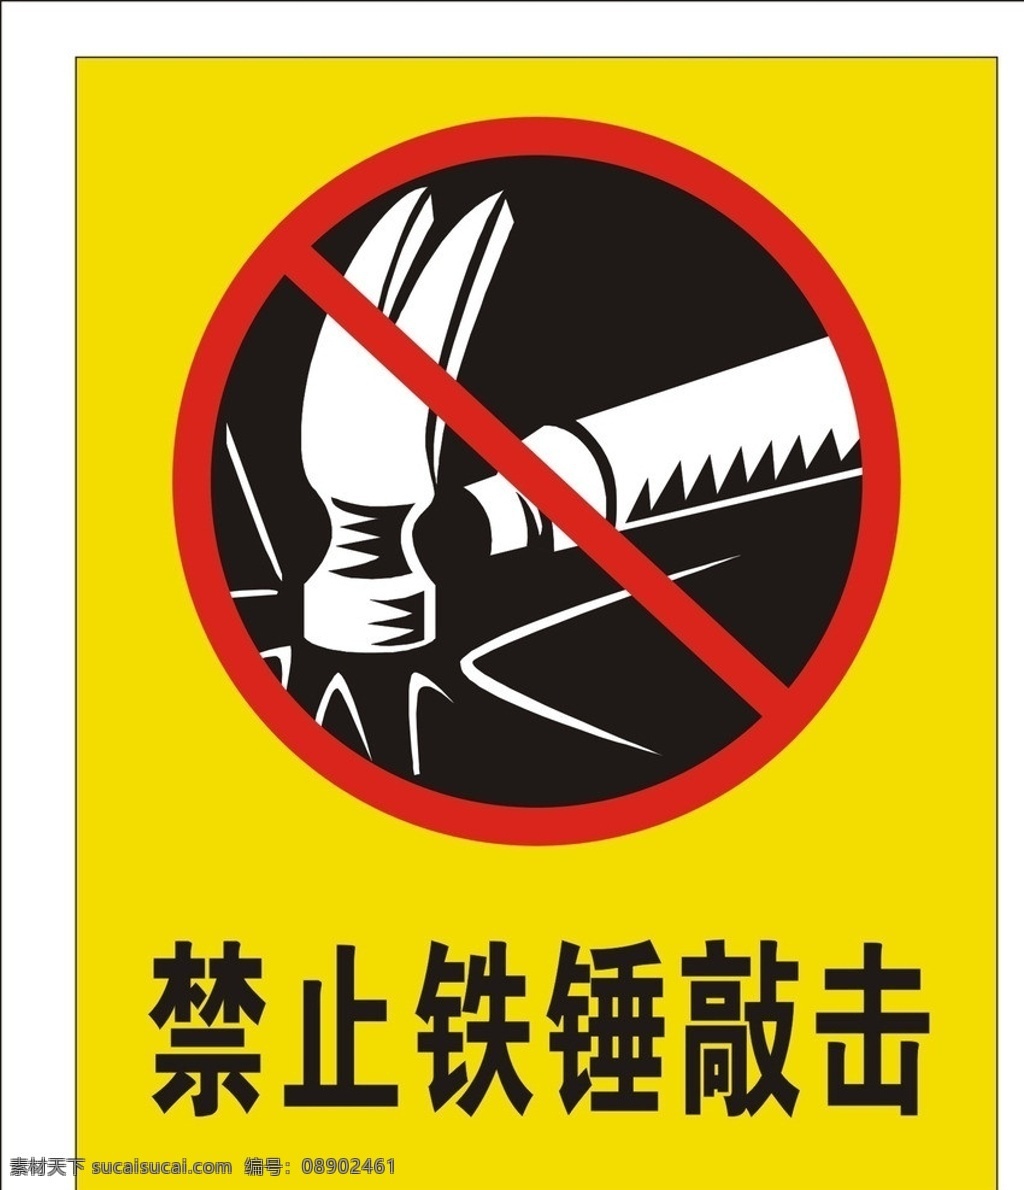 禁止铁锤敲击 铁锤 禁止敲击 标识标志图标 矢量